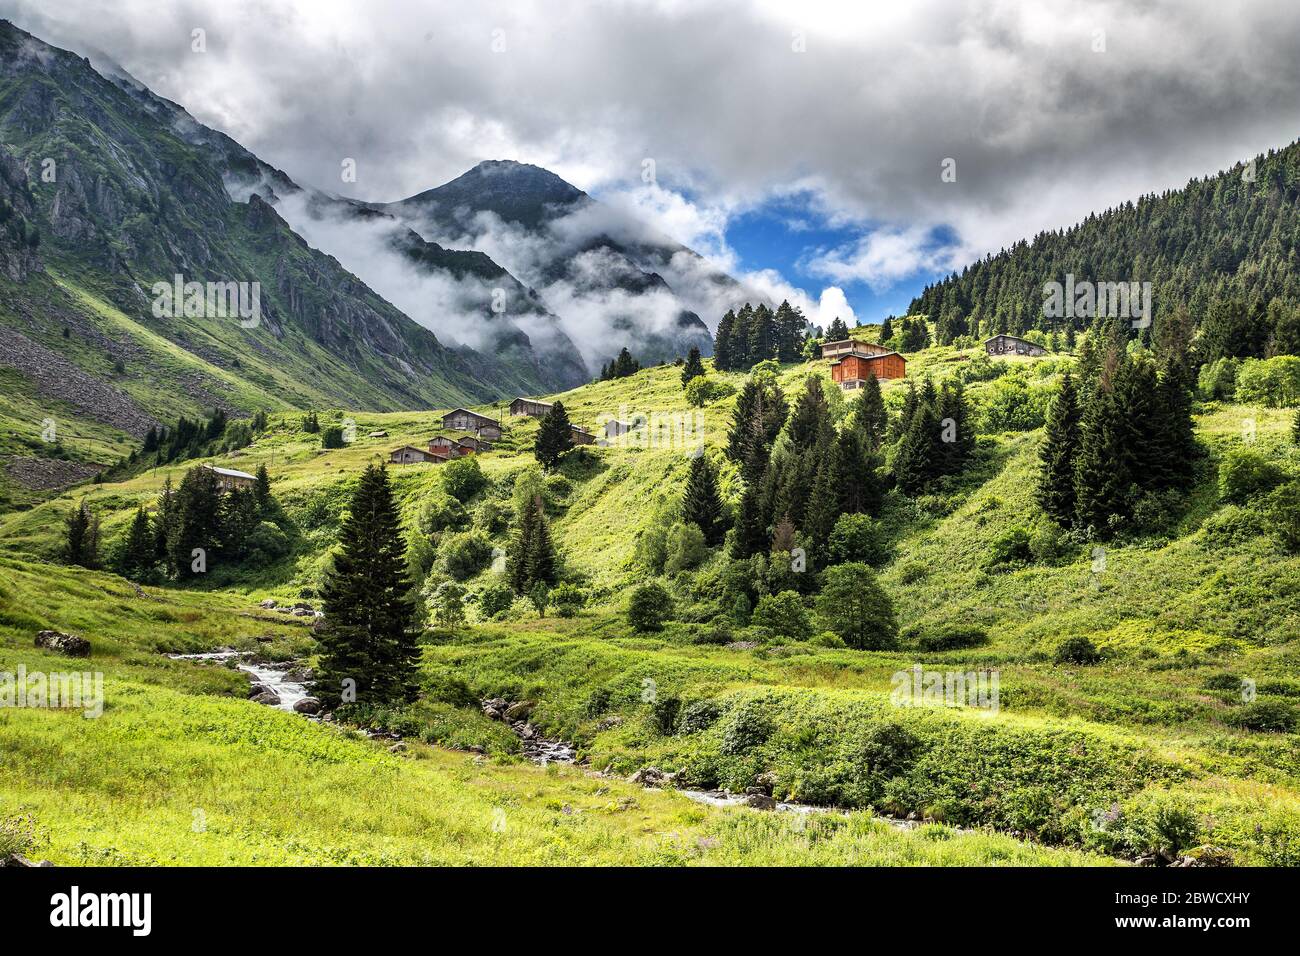 Die herrliche Natur, Nebel, grüne Abdeckung und Holzhäuser der Bergdörfer von Rize ... Stockfoto